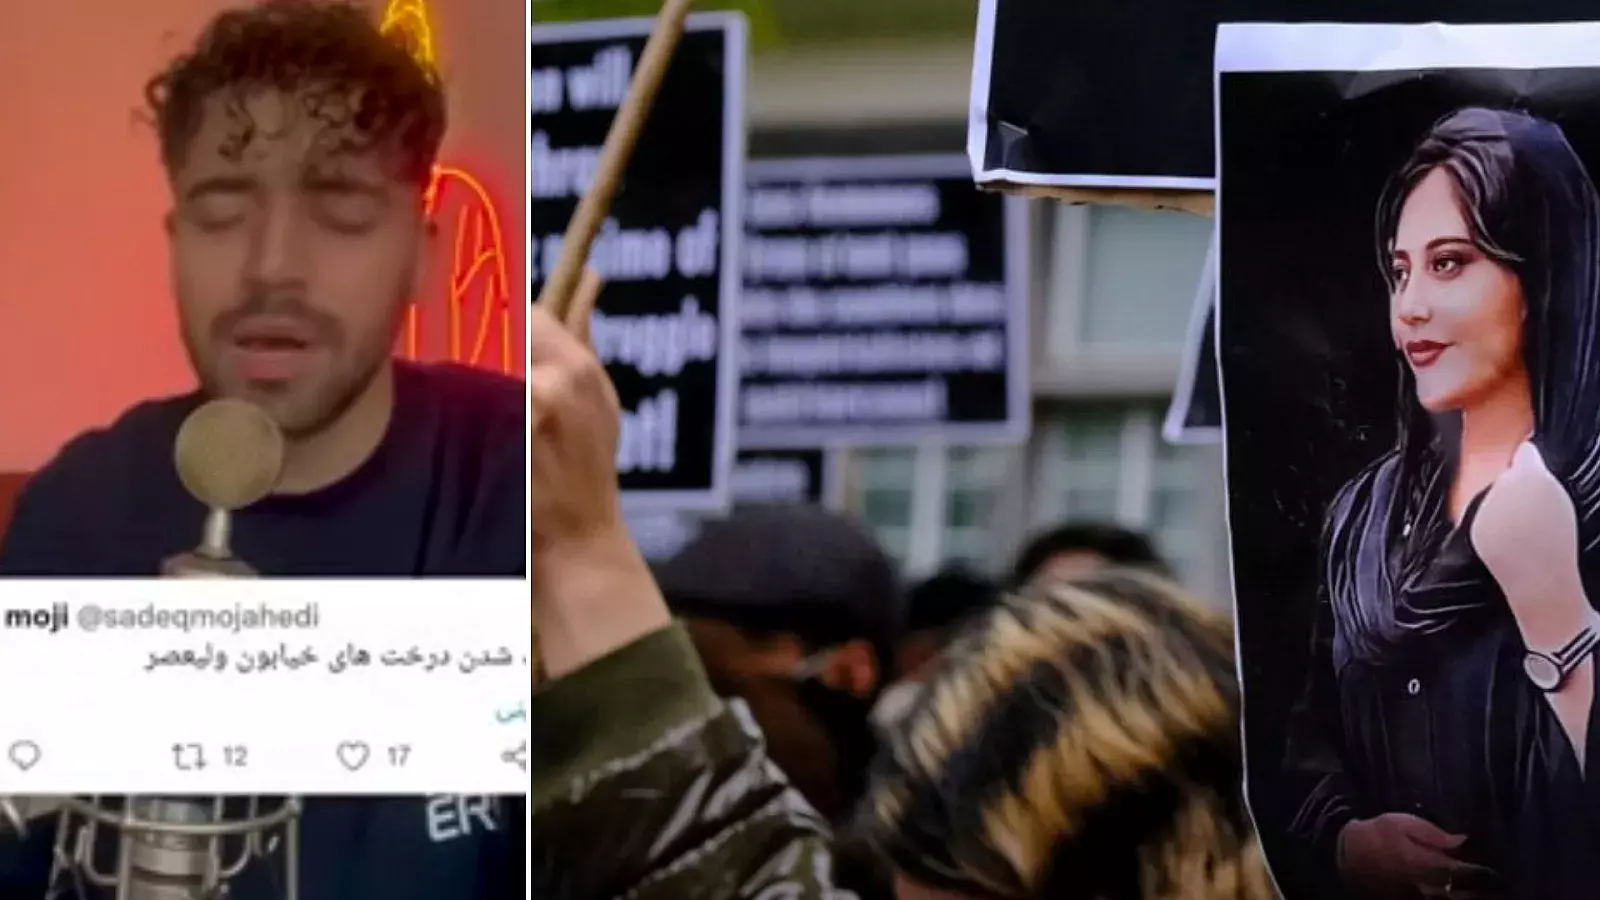 Baraye, himno de protestas en Irán, grana el Grammy